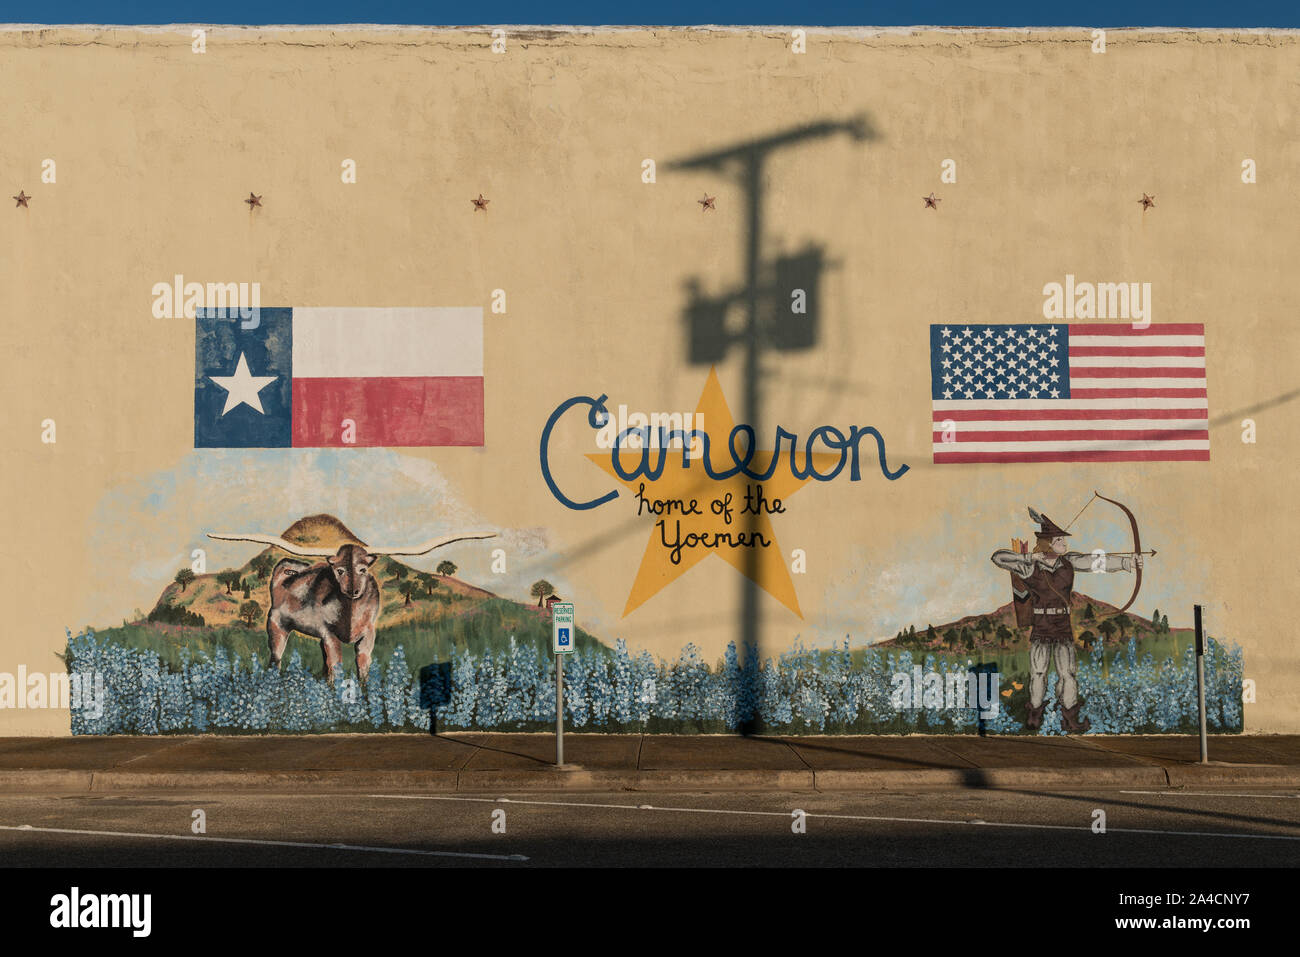 Les drapeaux du Texas et les États-Unis, un longhorn steer, et Les Robins des bois-comme la figure sont en vedette sur cette murale au centre-ville de Cameron, Texas, à Milam Comté. Yoemen est le surnom de C.H. Yoe High School's équipes sportives de Cameron Banque D'Images